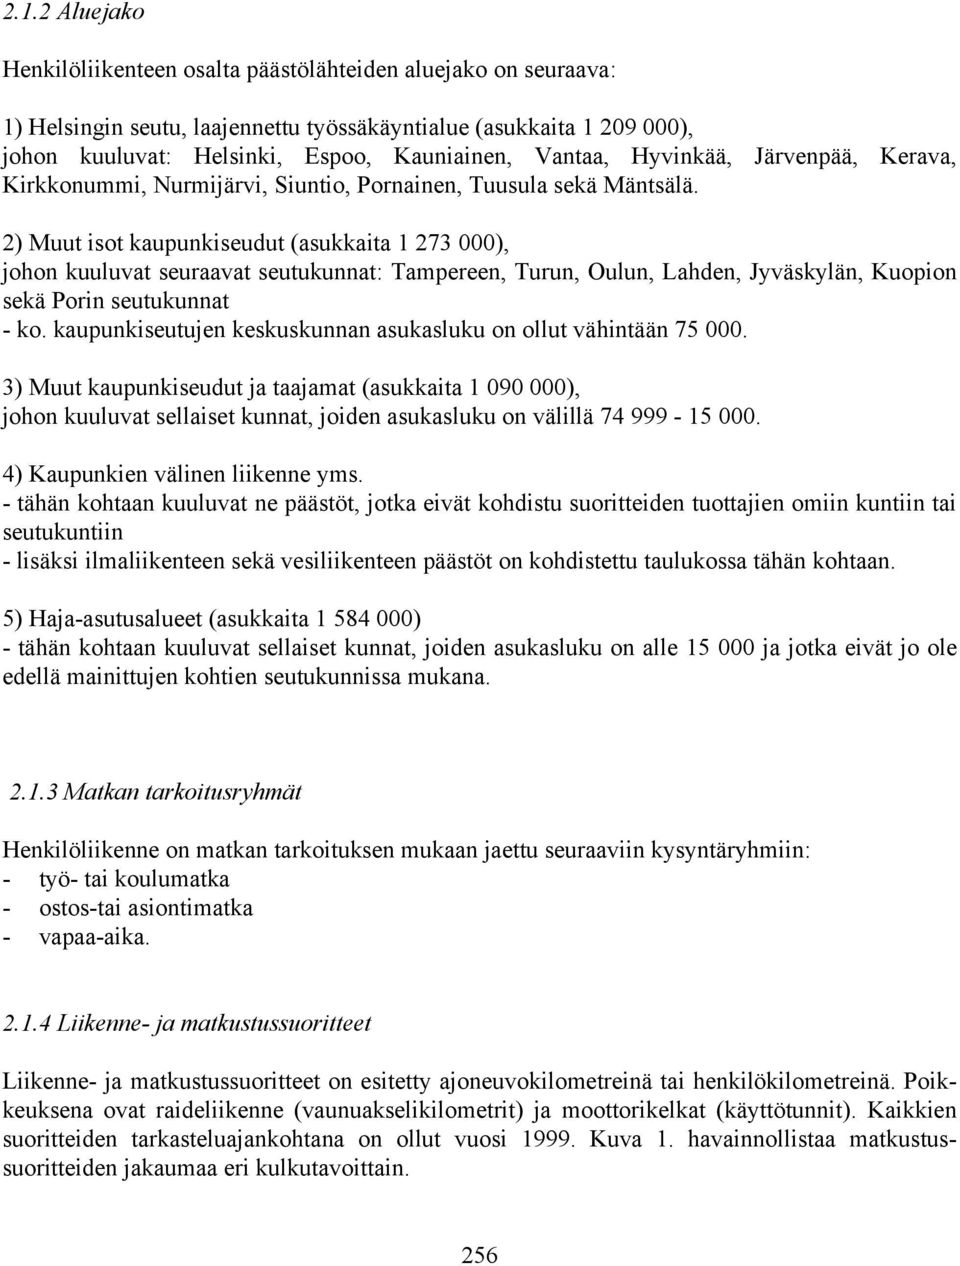 2) Muut isot kaupunkiseudut (asukkaita 1 273 000), johon kuuluvat seuraavat seutukunnat: Tampereen, Turun, Oulun, Lahden, Jyväskylän, Kuopion sekä Porin seutukunnat - ko.